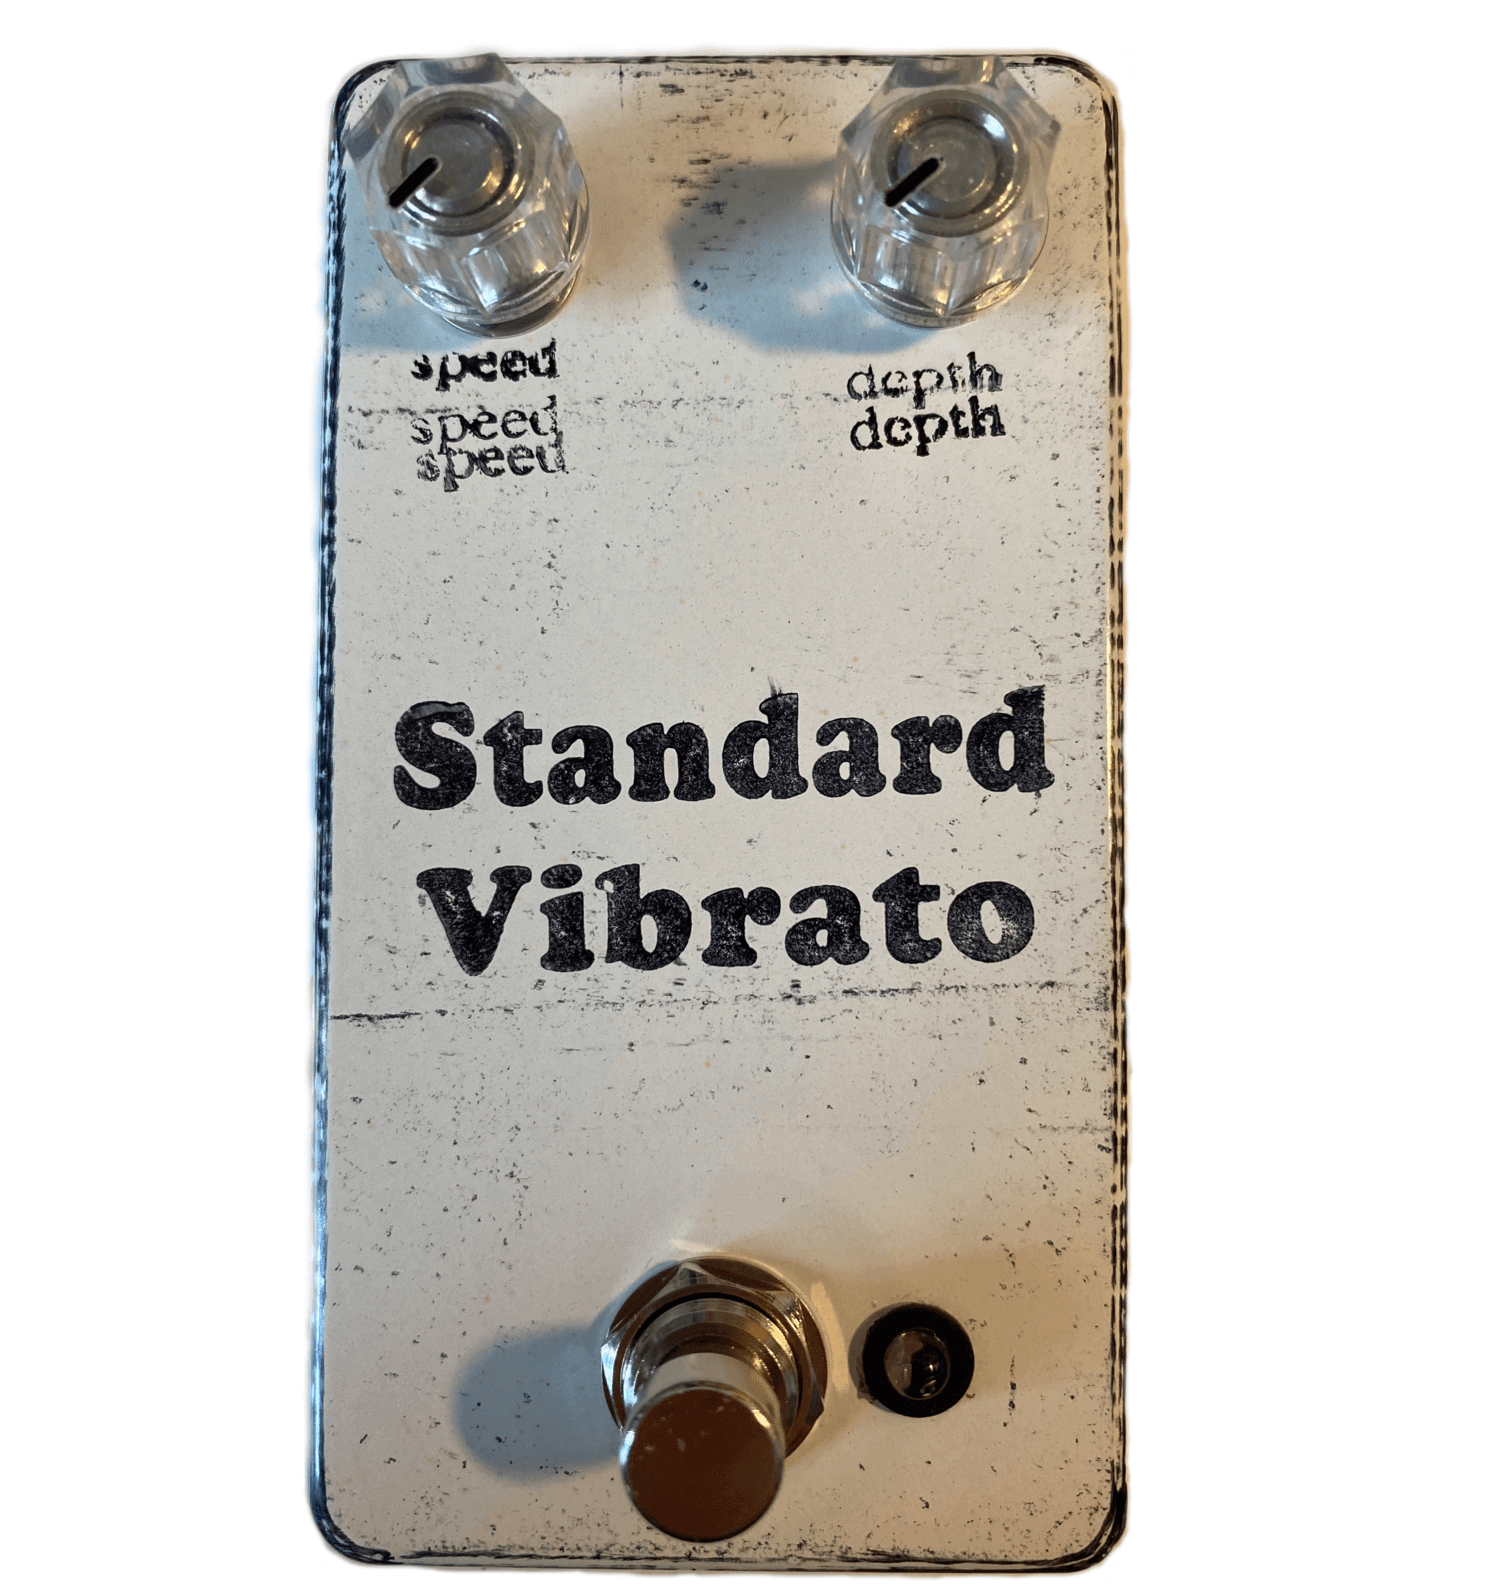 Standard Vibrato